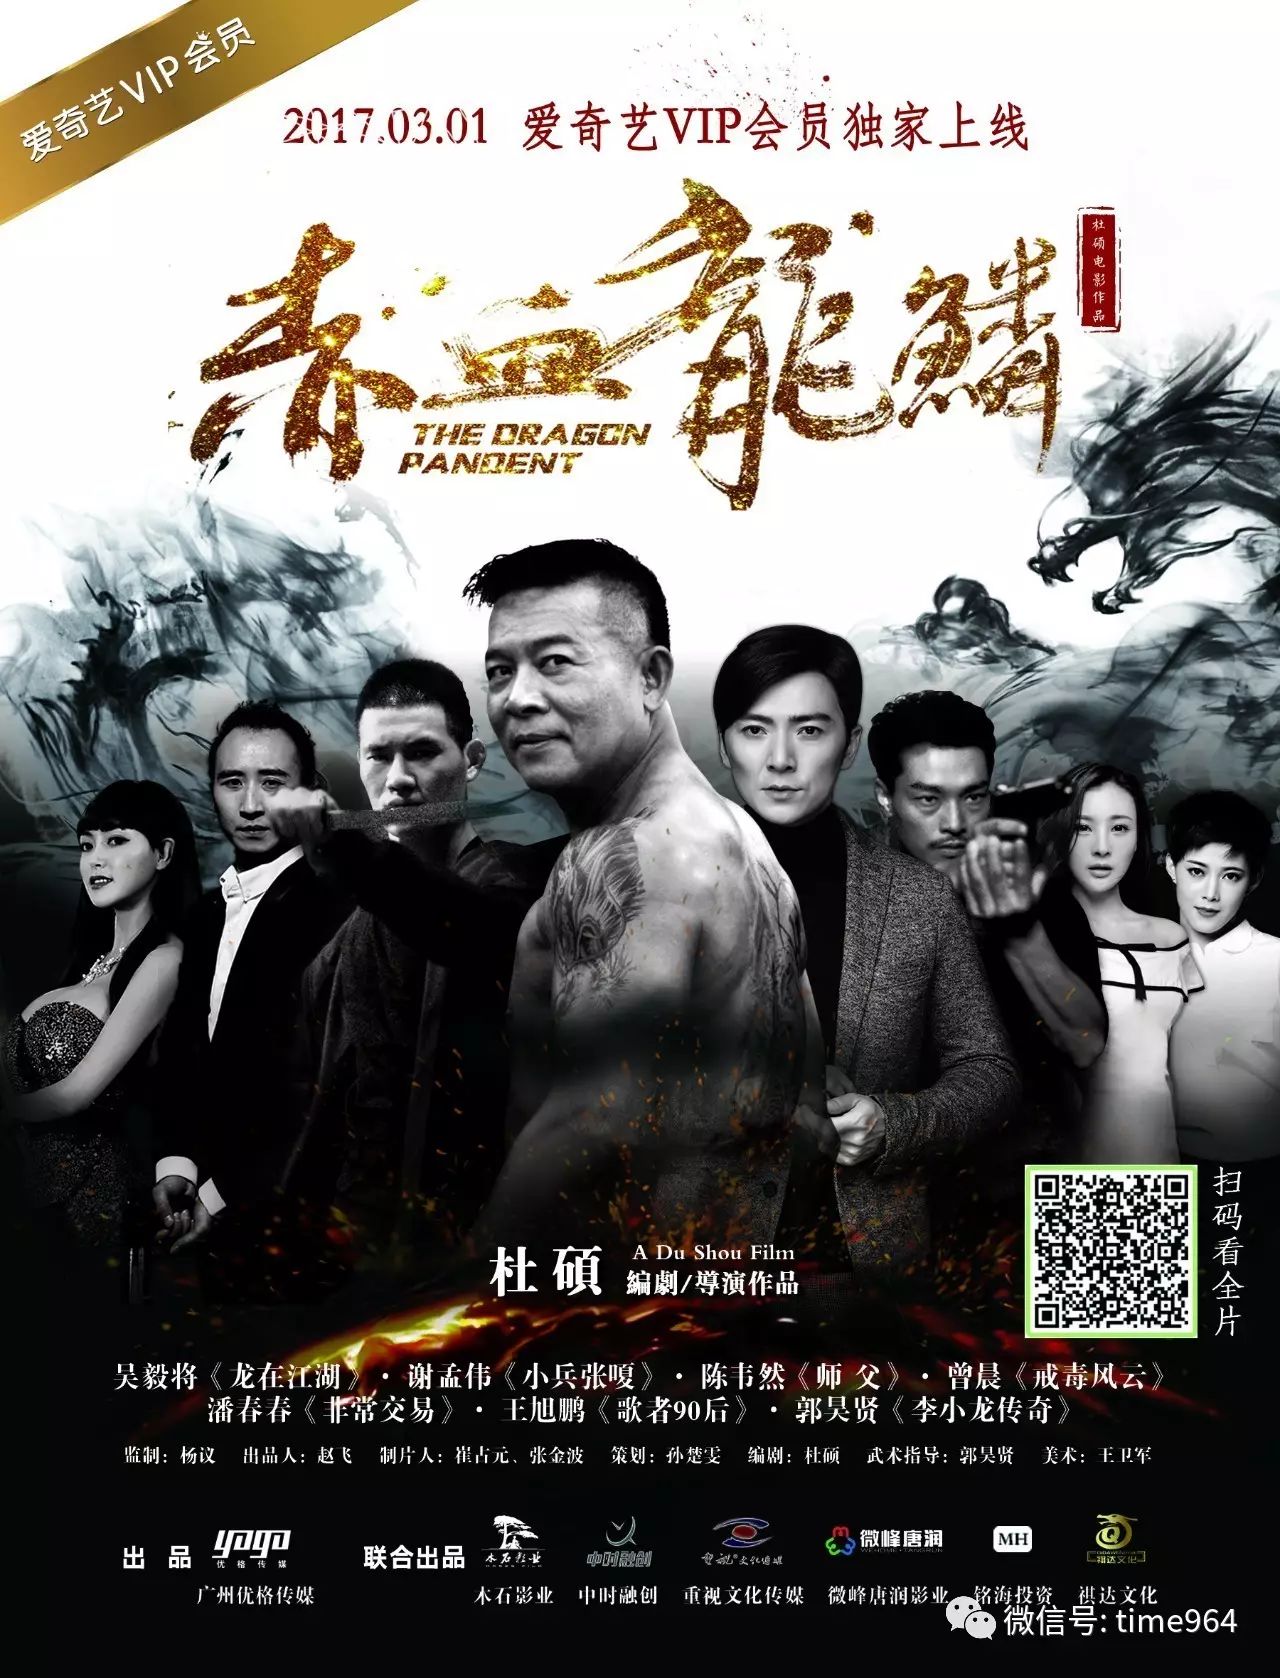 中国动作喜剧电影新势力《赤血龙鳞》今日上映!